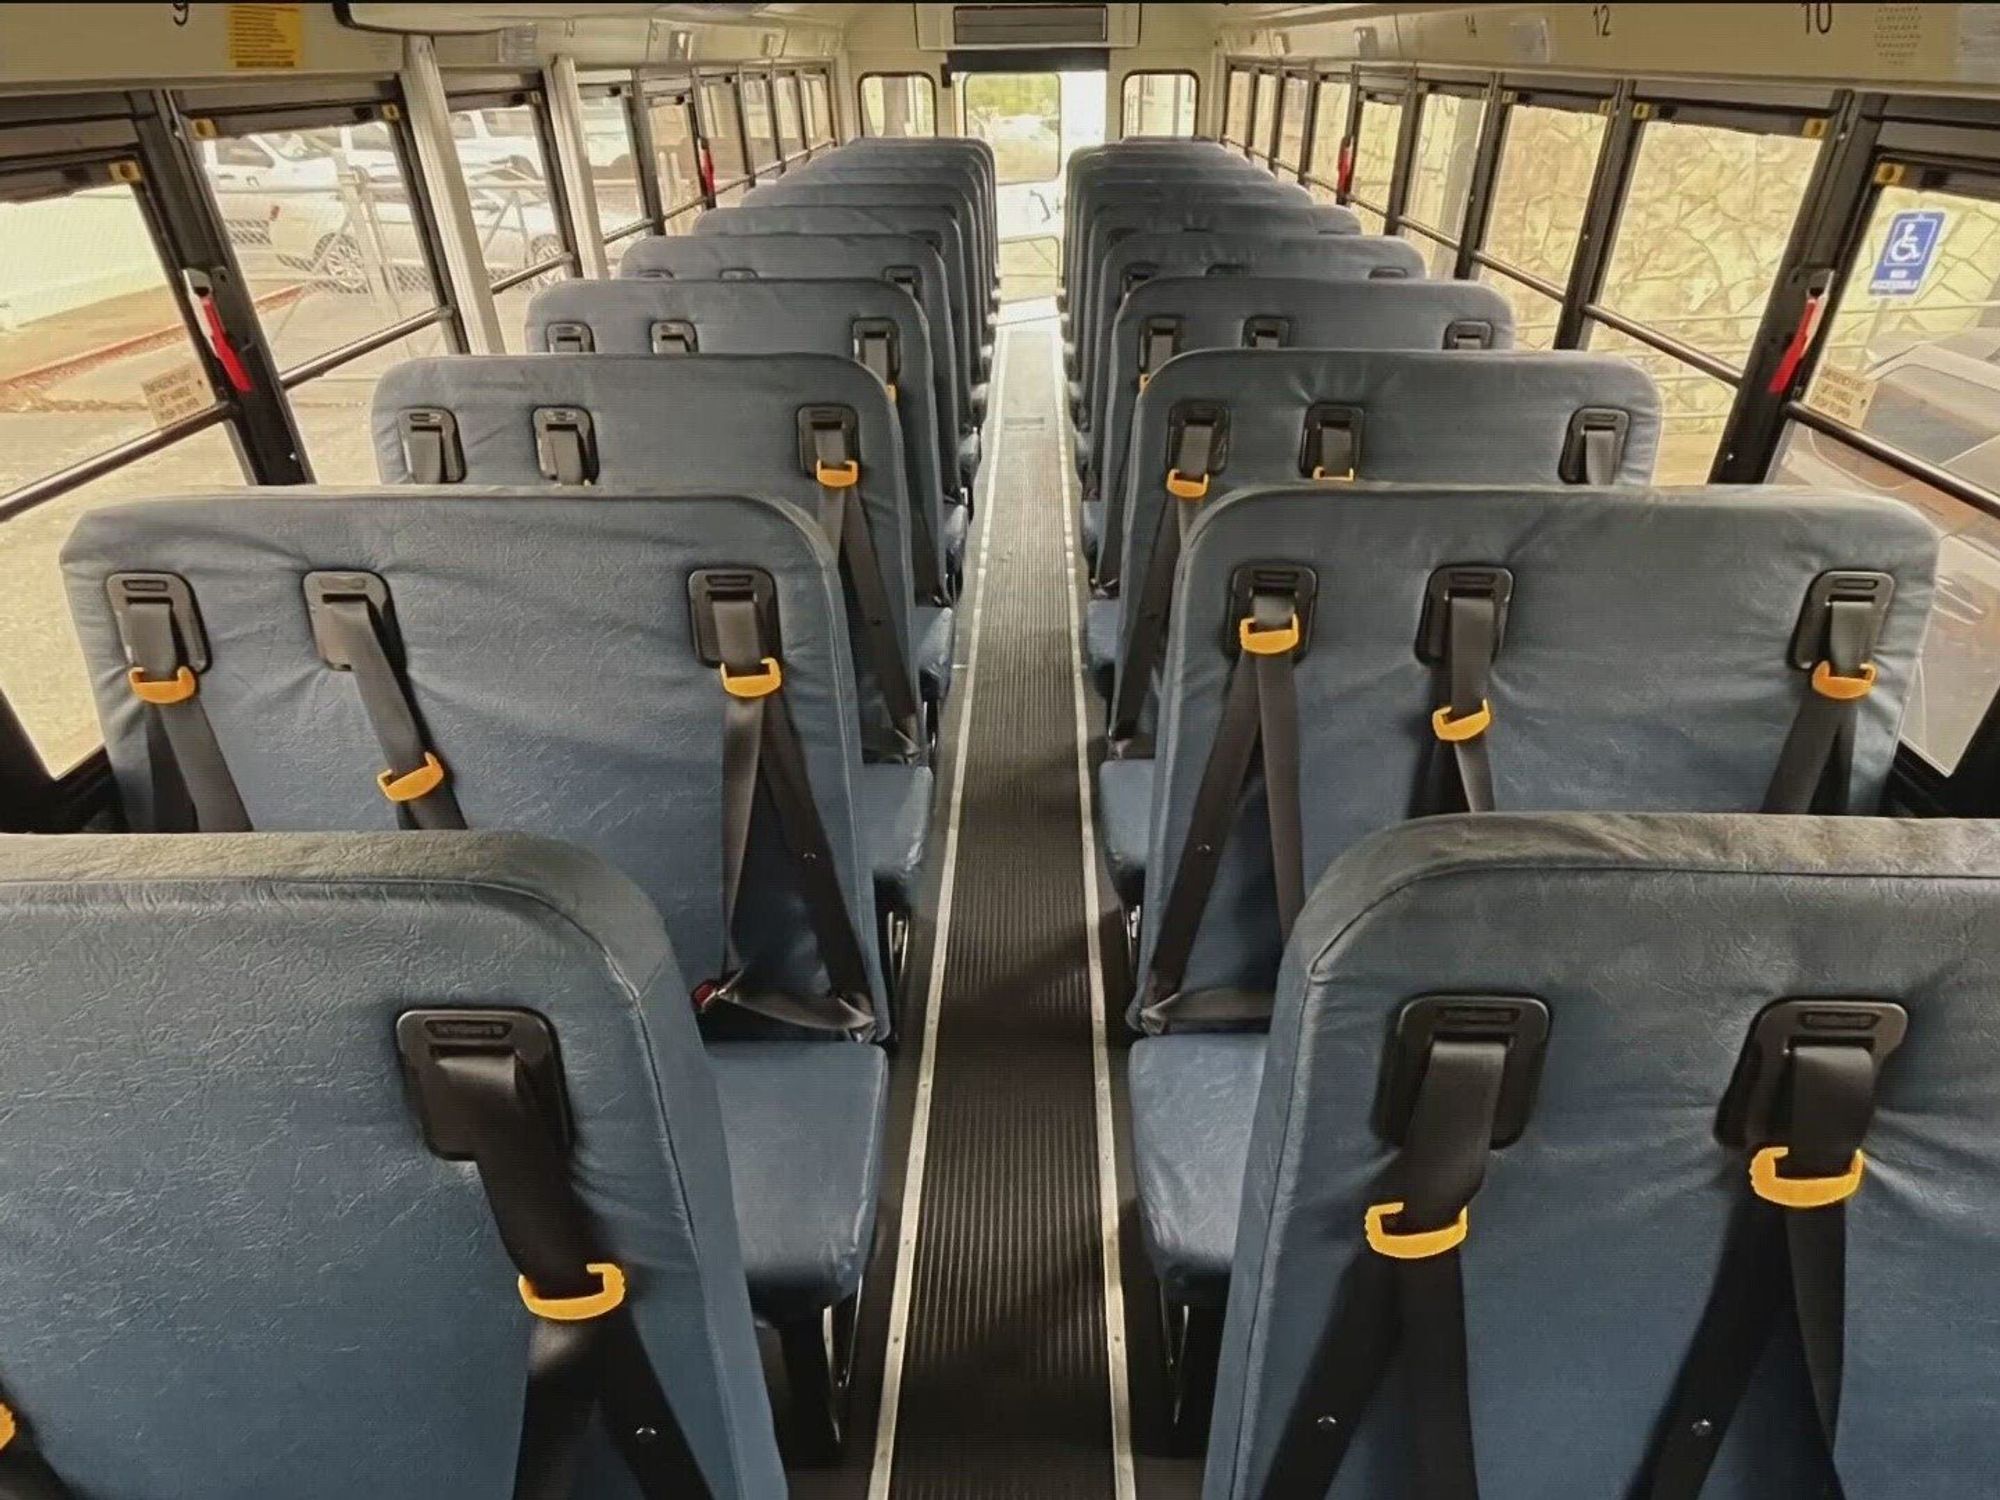 School bus interior